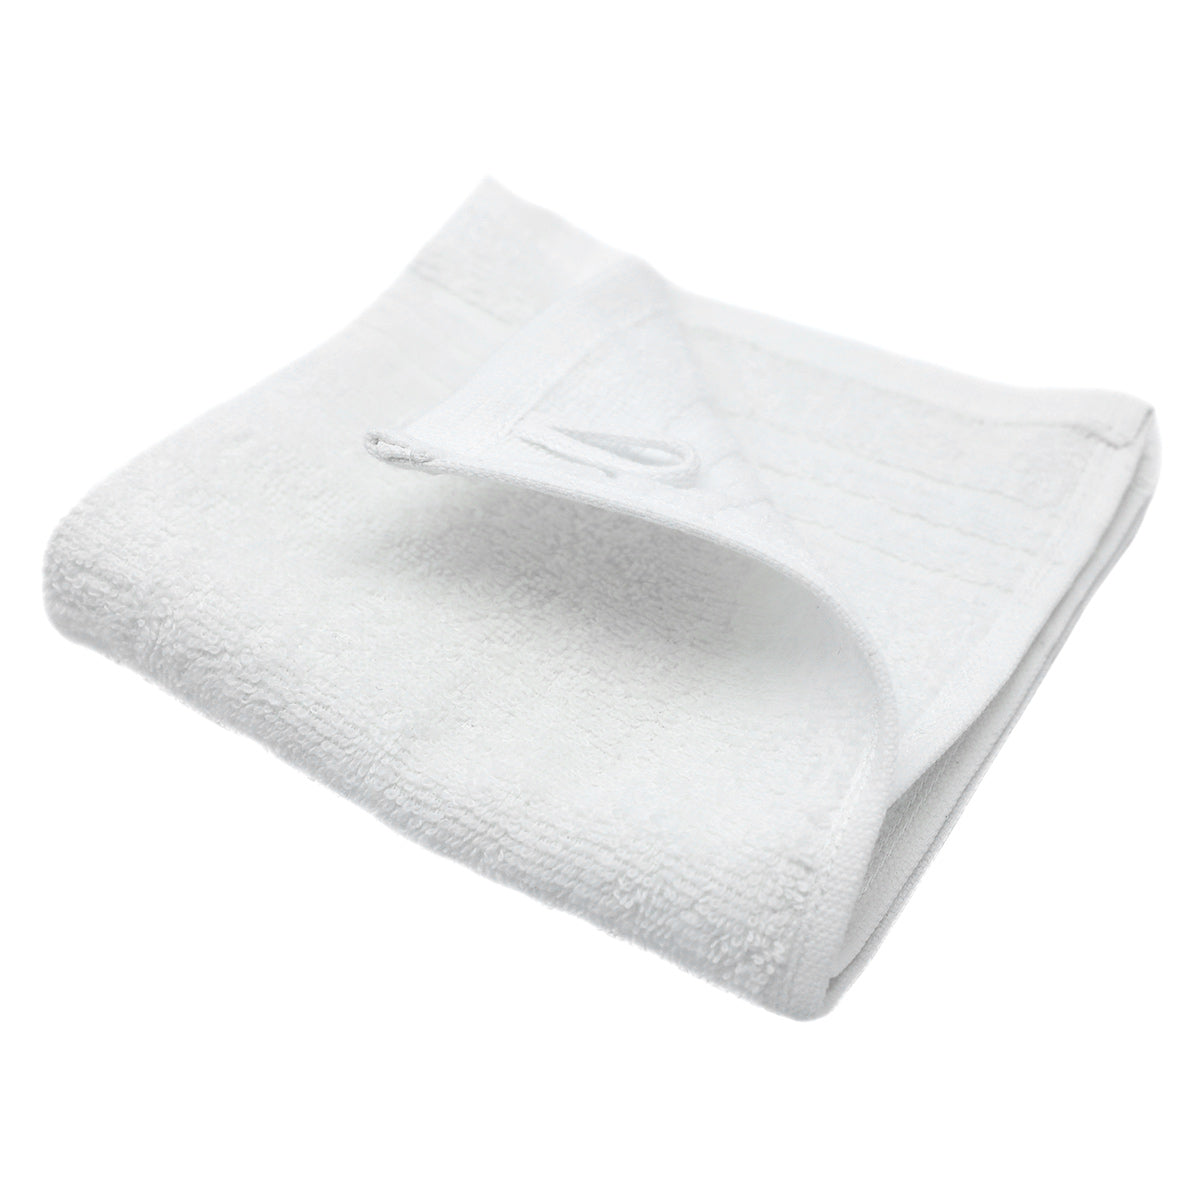 (10 броя) Гренландска сапунена кърпа - 30 x 30 см - Бяла